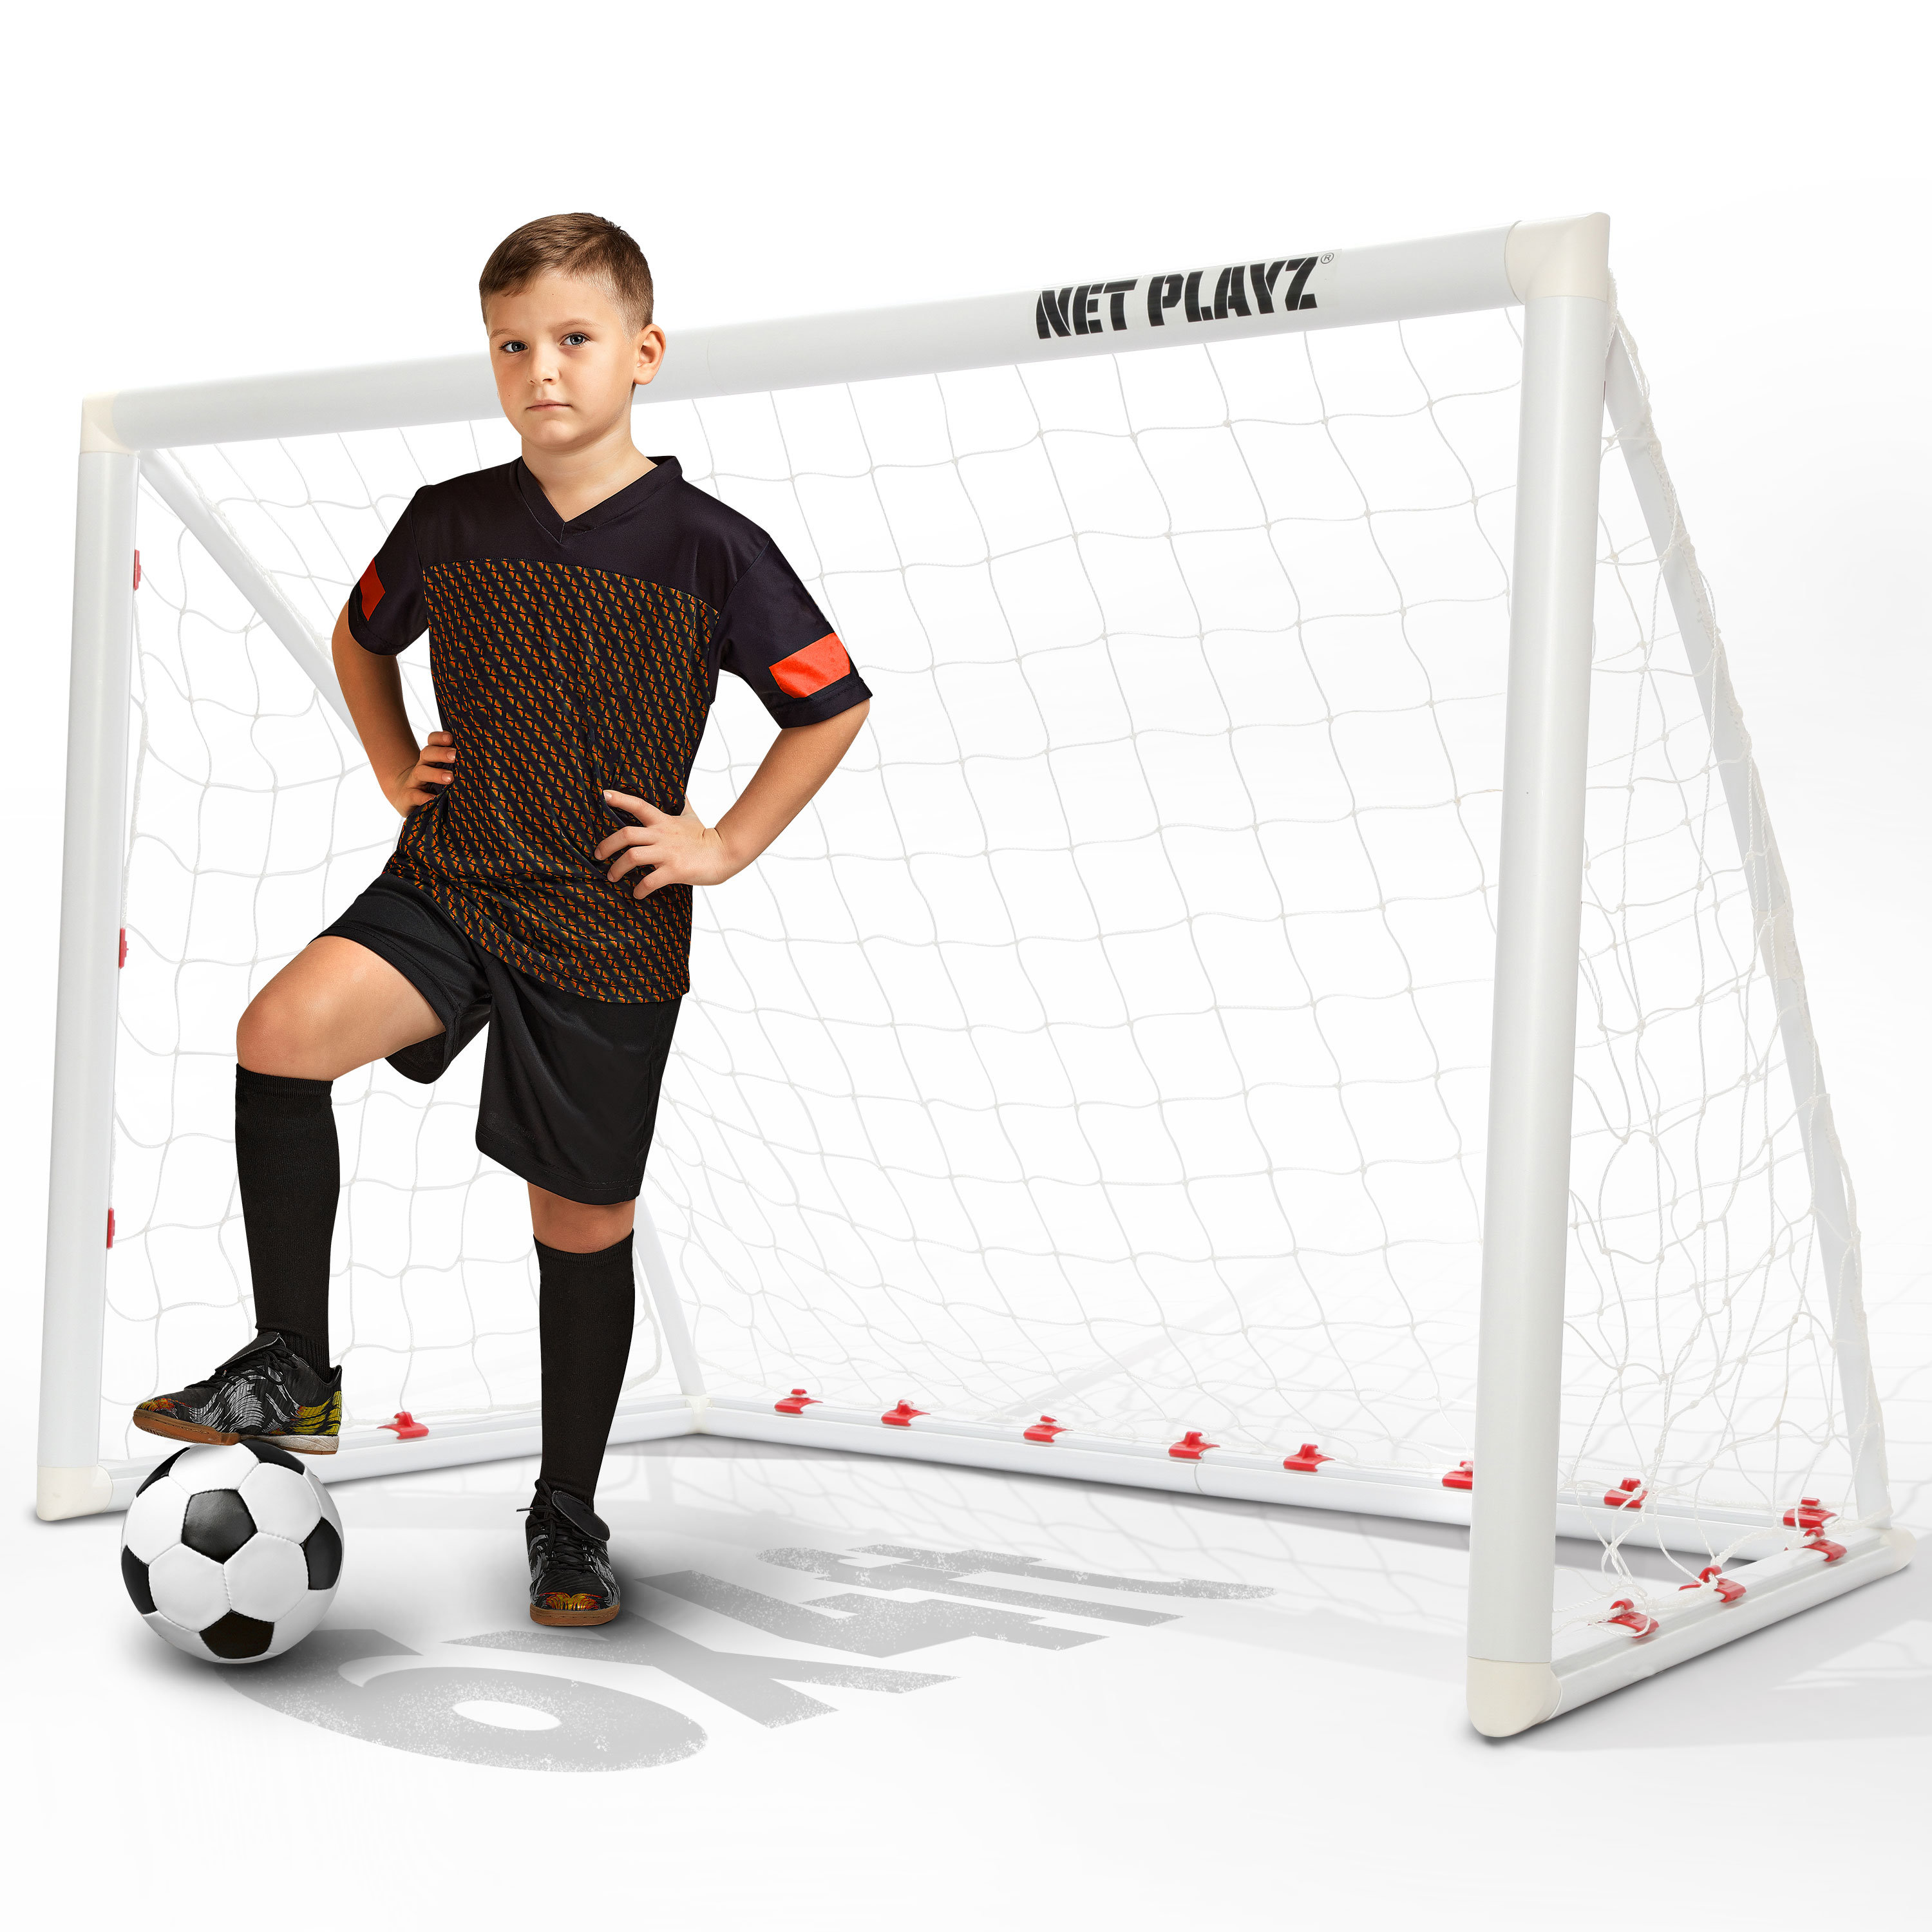 Net Playz Soccer Goals - Portable Football Goals, Pop-up Net for